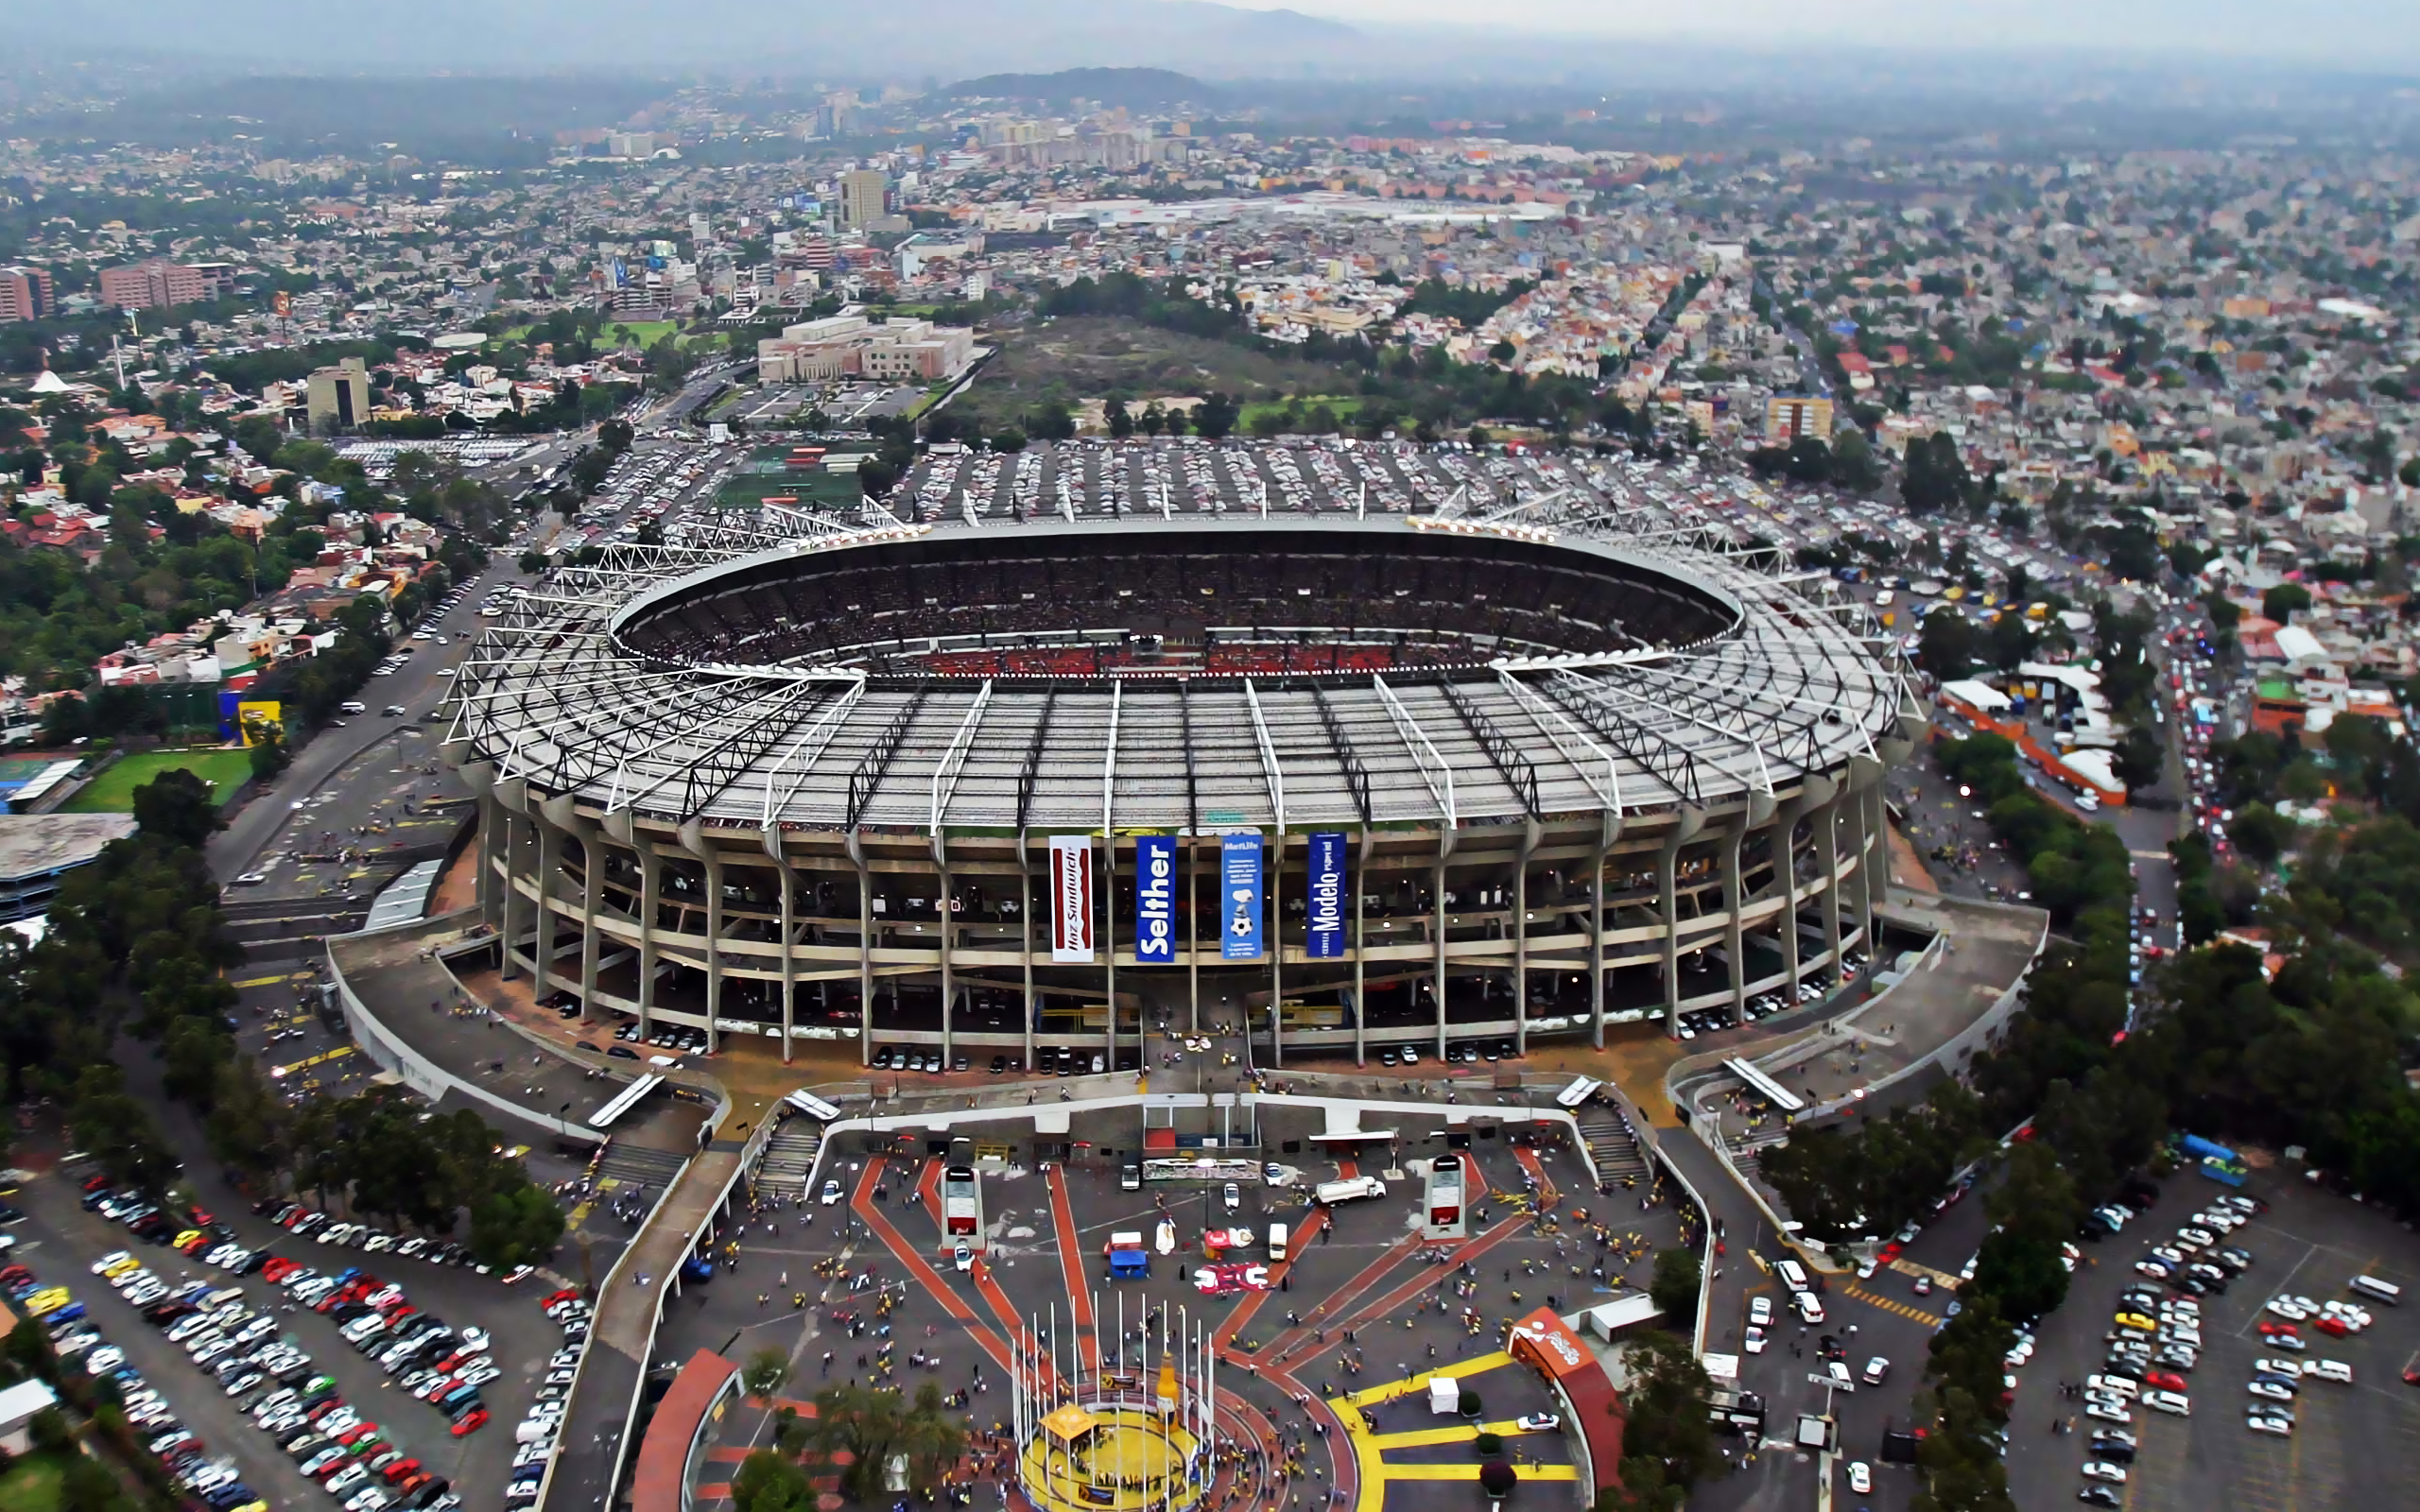 Estadio Azteca Wallpapers